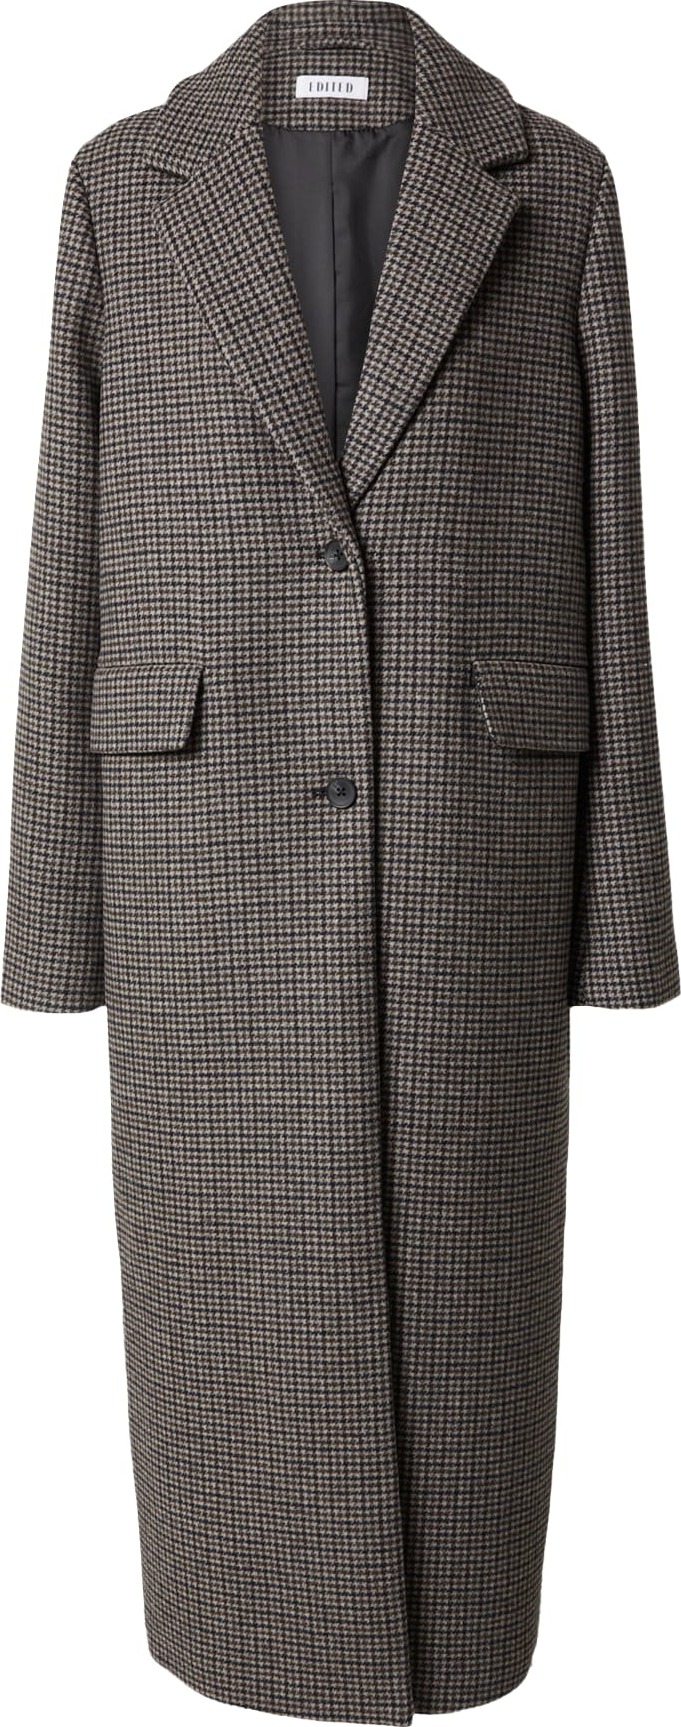 Přechodný kabát 'Ninette' EDITED šedá / světle šedá / černá